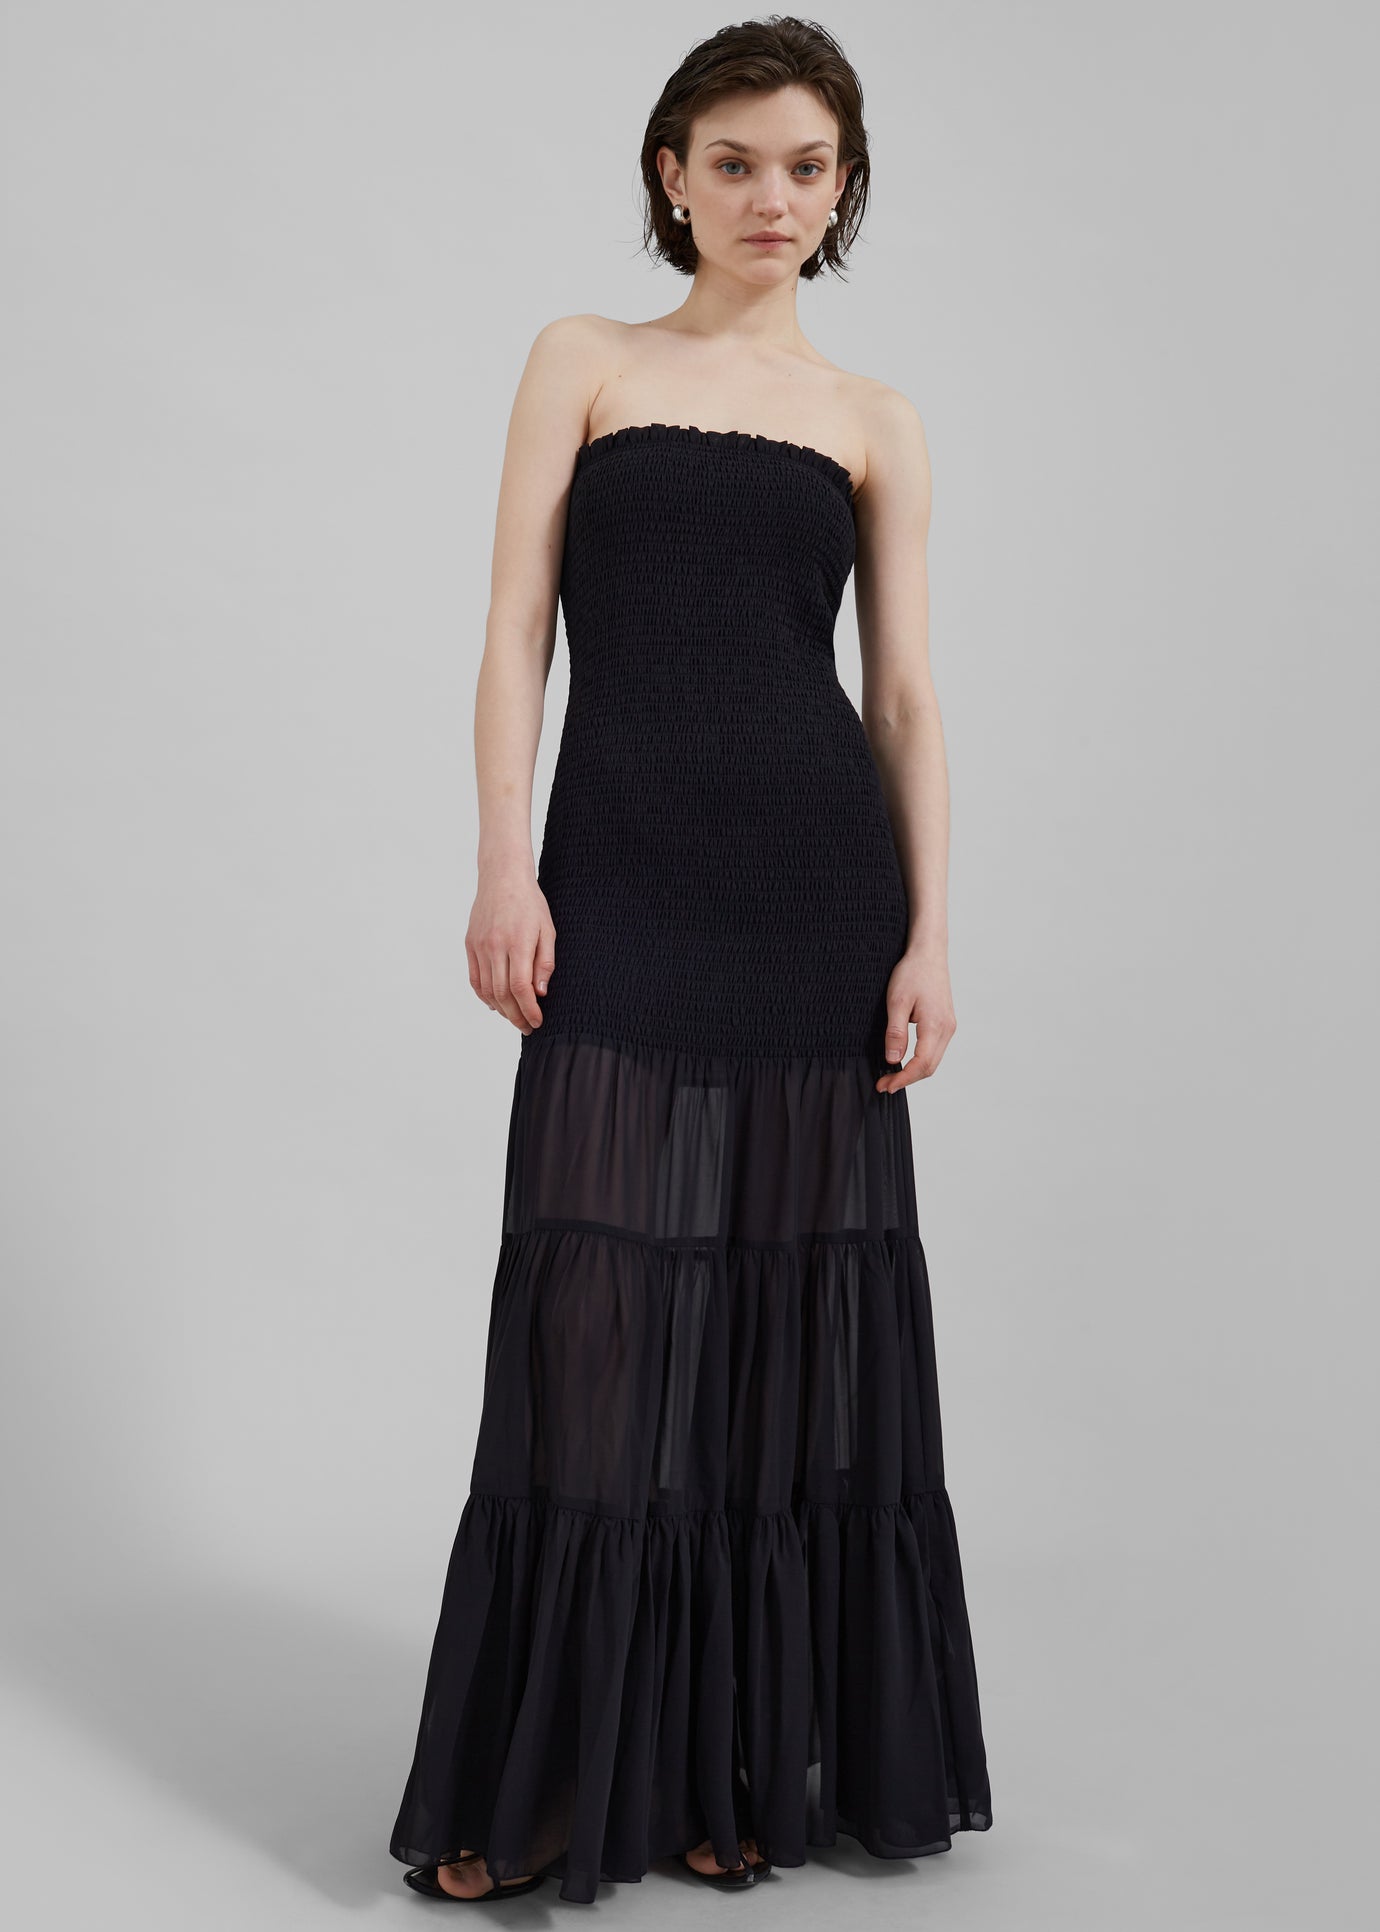 Rotate Chiffon Strapless Dress - Black - 1